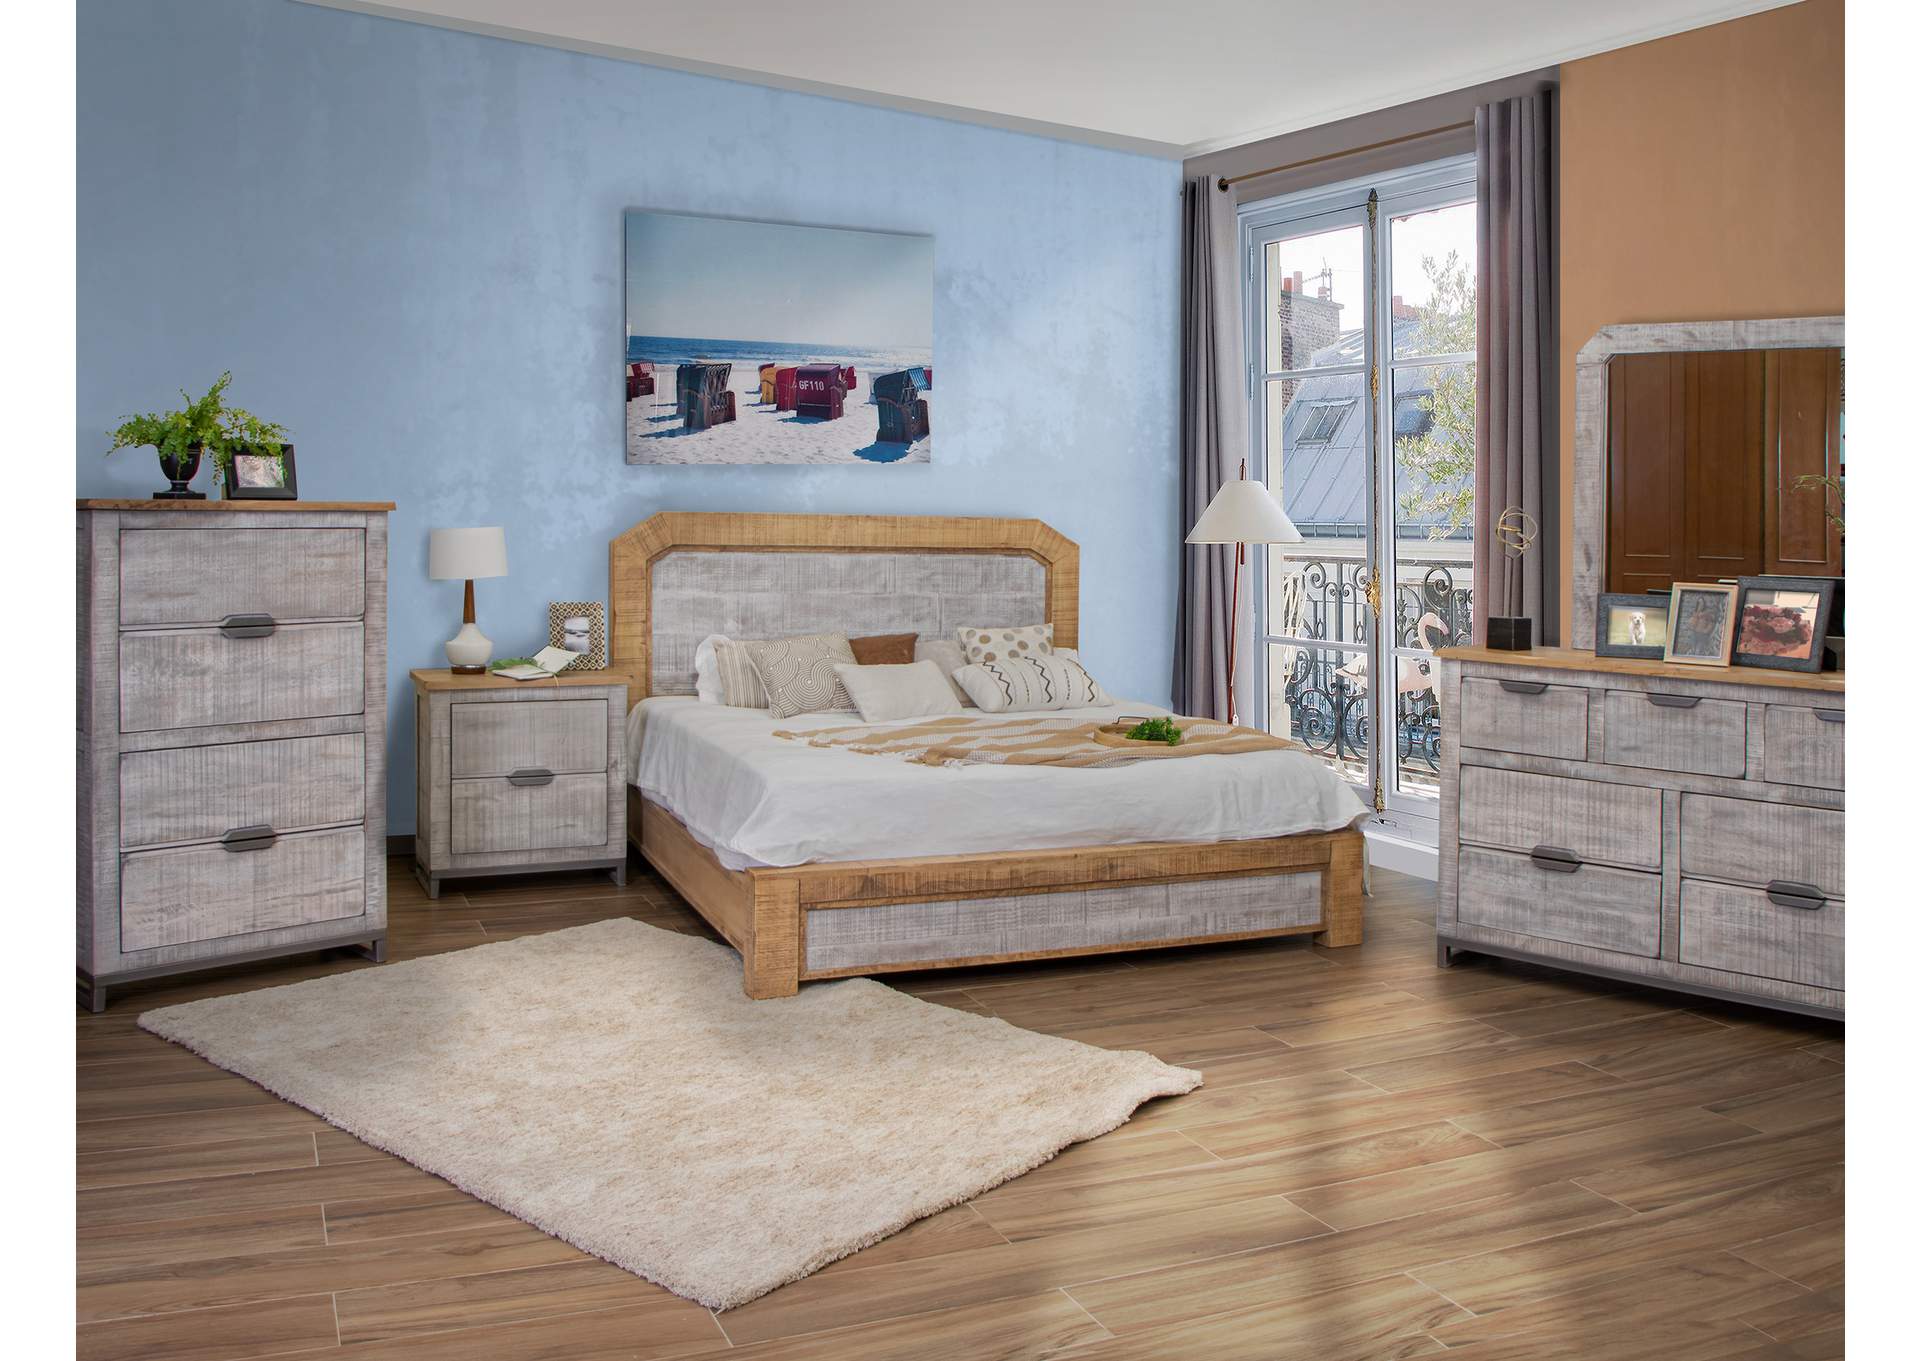 Mita California King Bed,International Furniture Direct